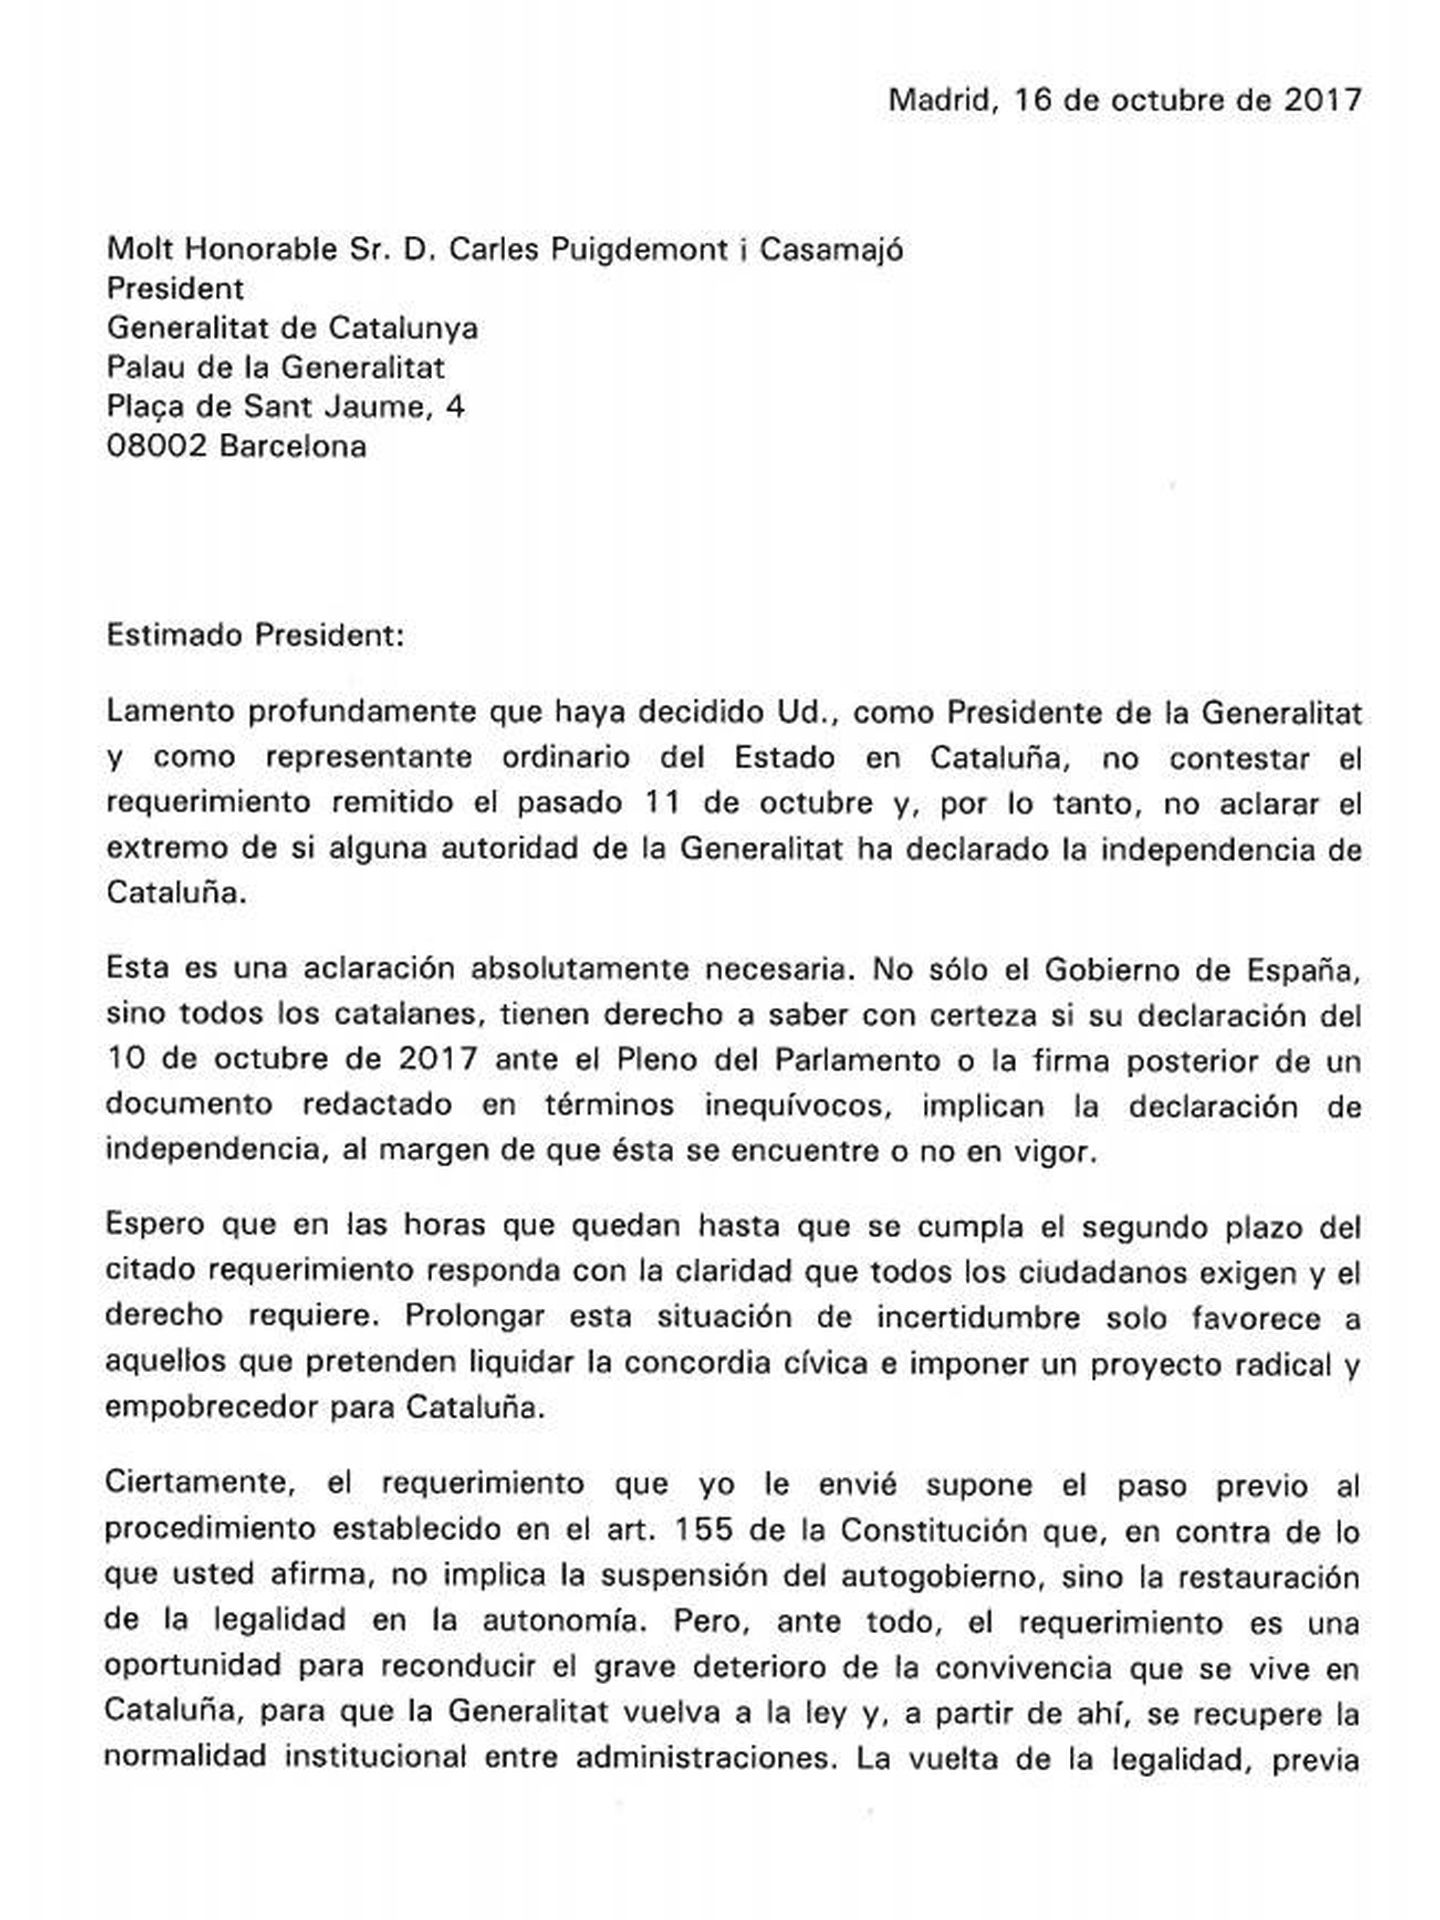 Esta es la carta de Rajoy a Puigdemont